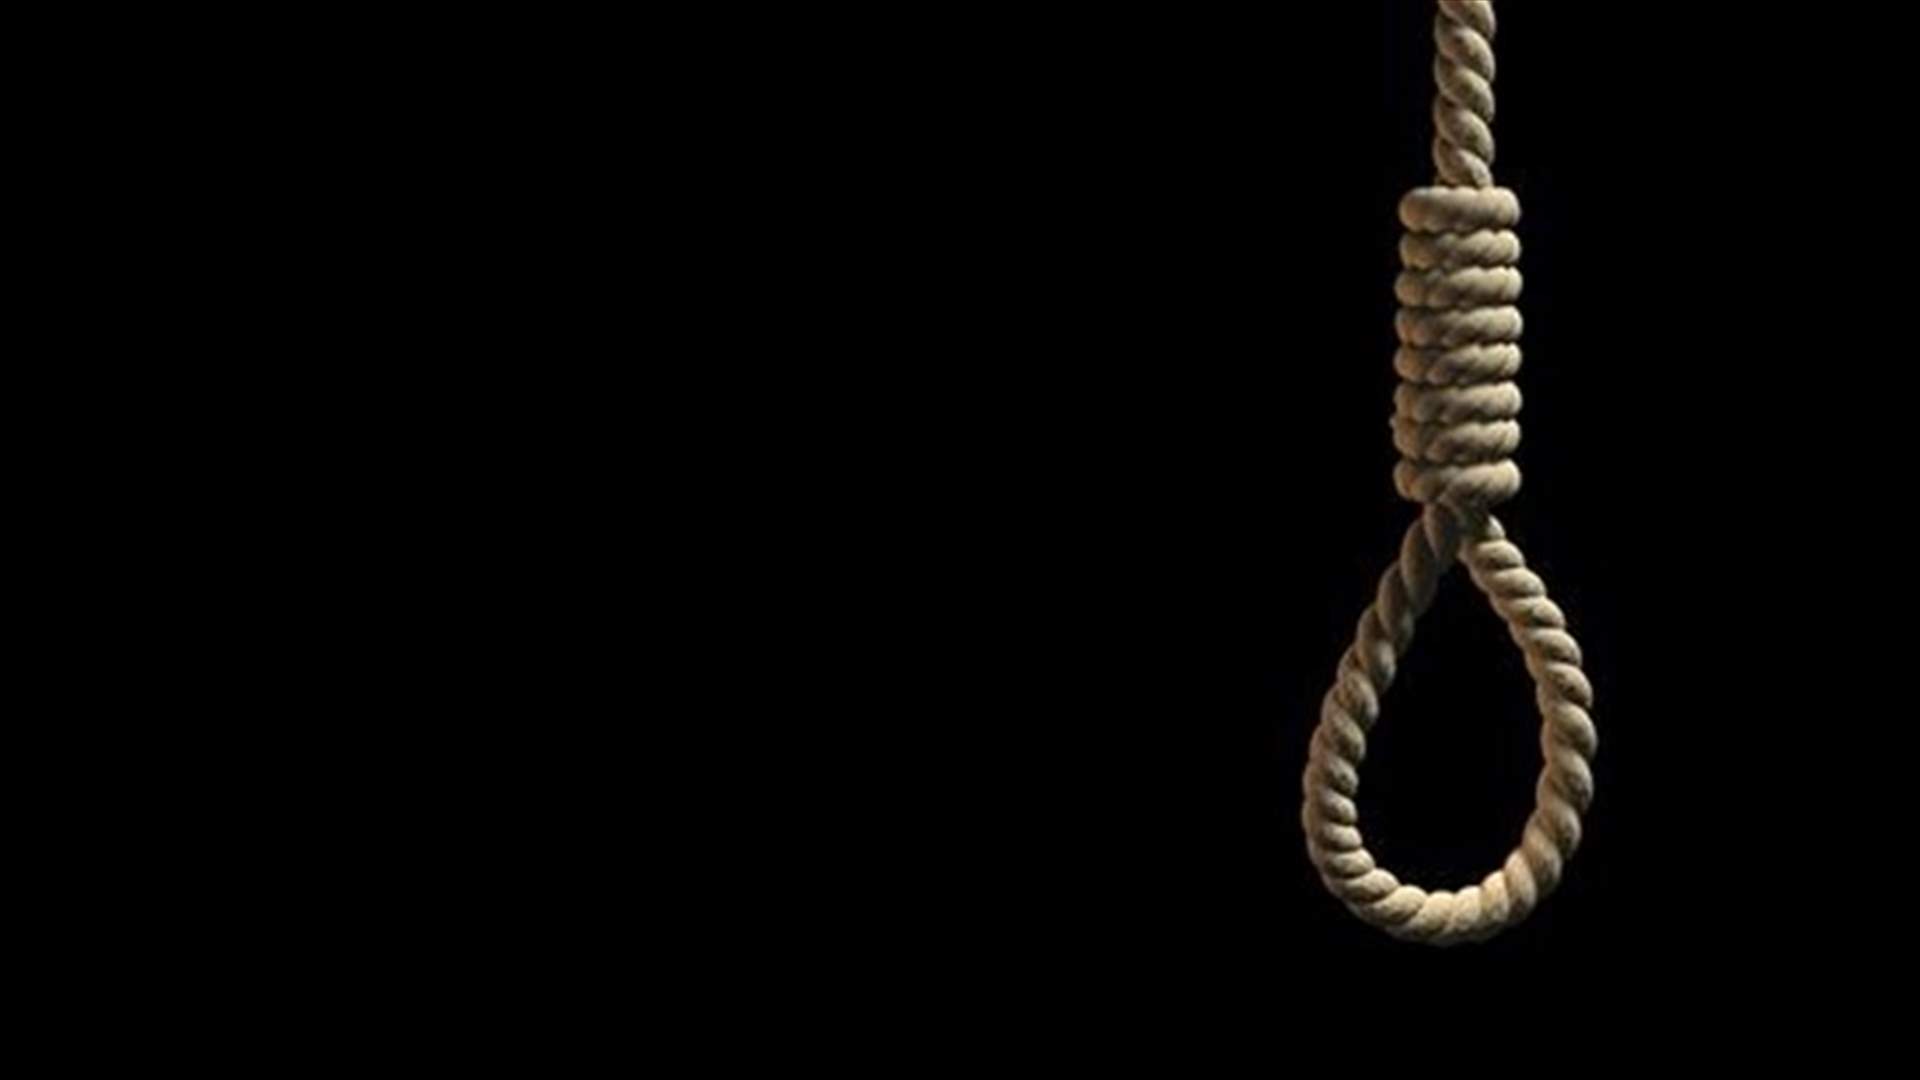 إيران تسقط عقوبة الإعدام في قضية اساءة للنبي محمد